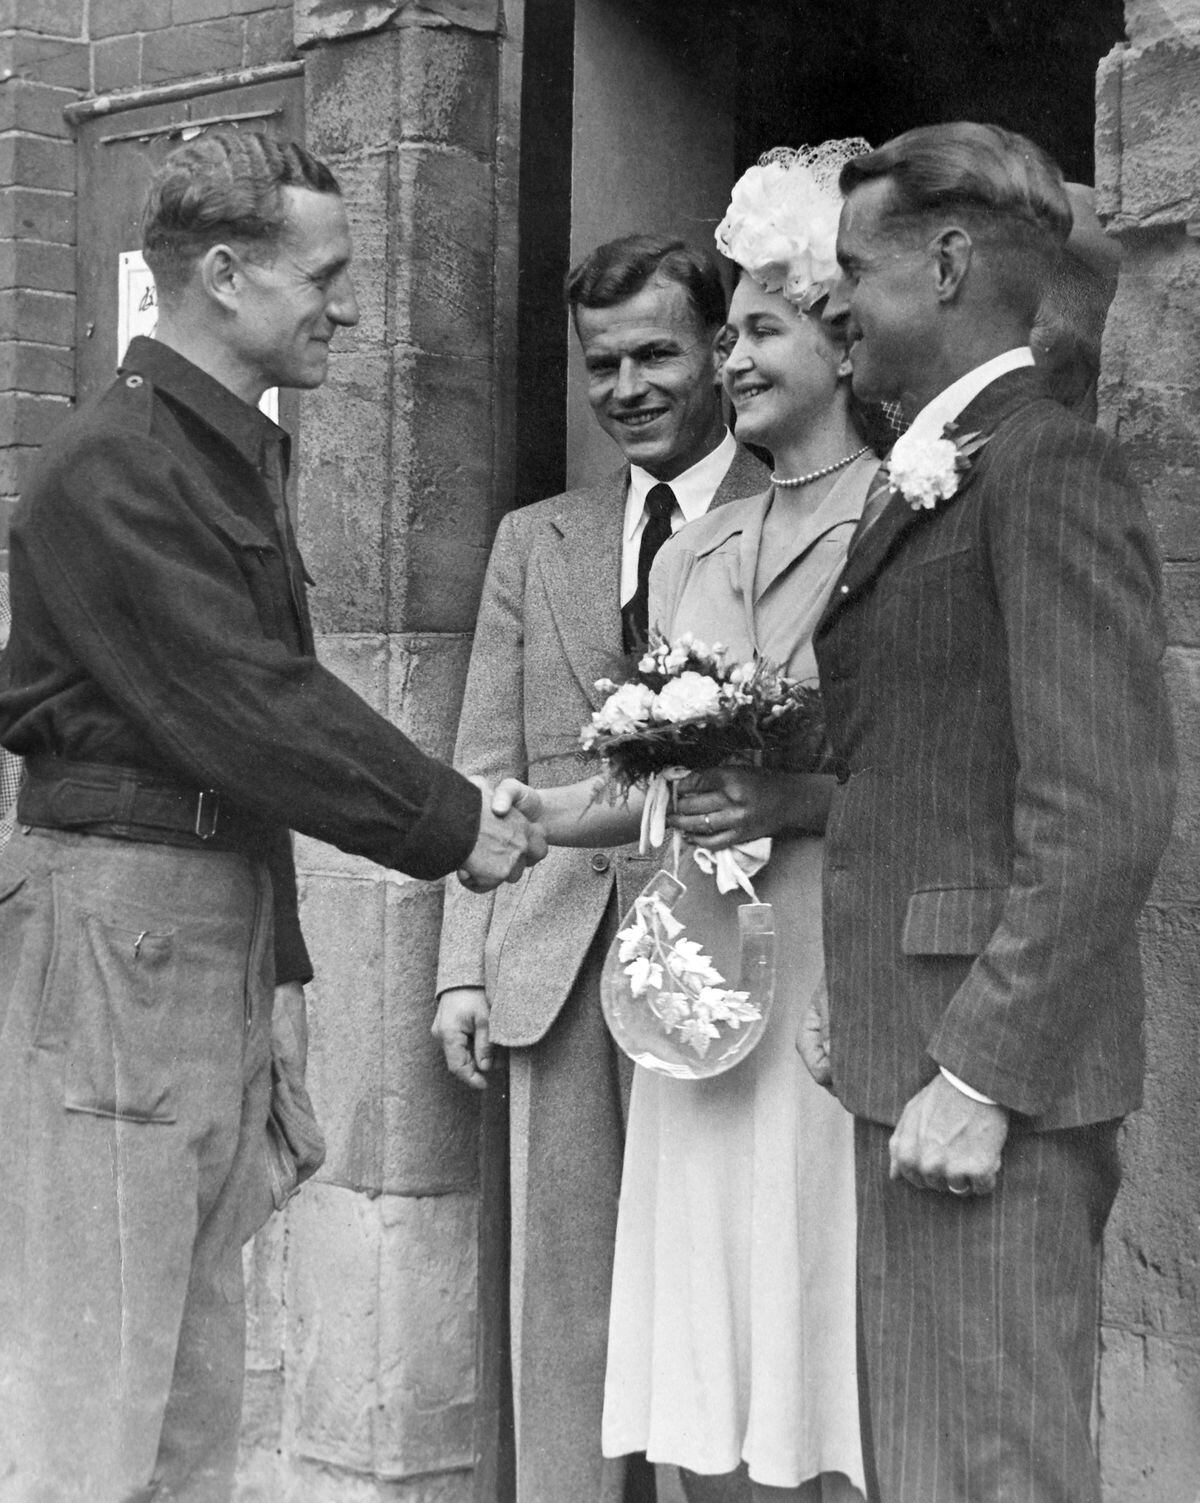 Wilken Ranck and bride Elsa Andersen being congratulated in August 1947